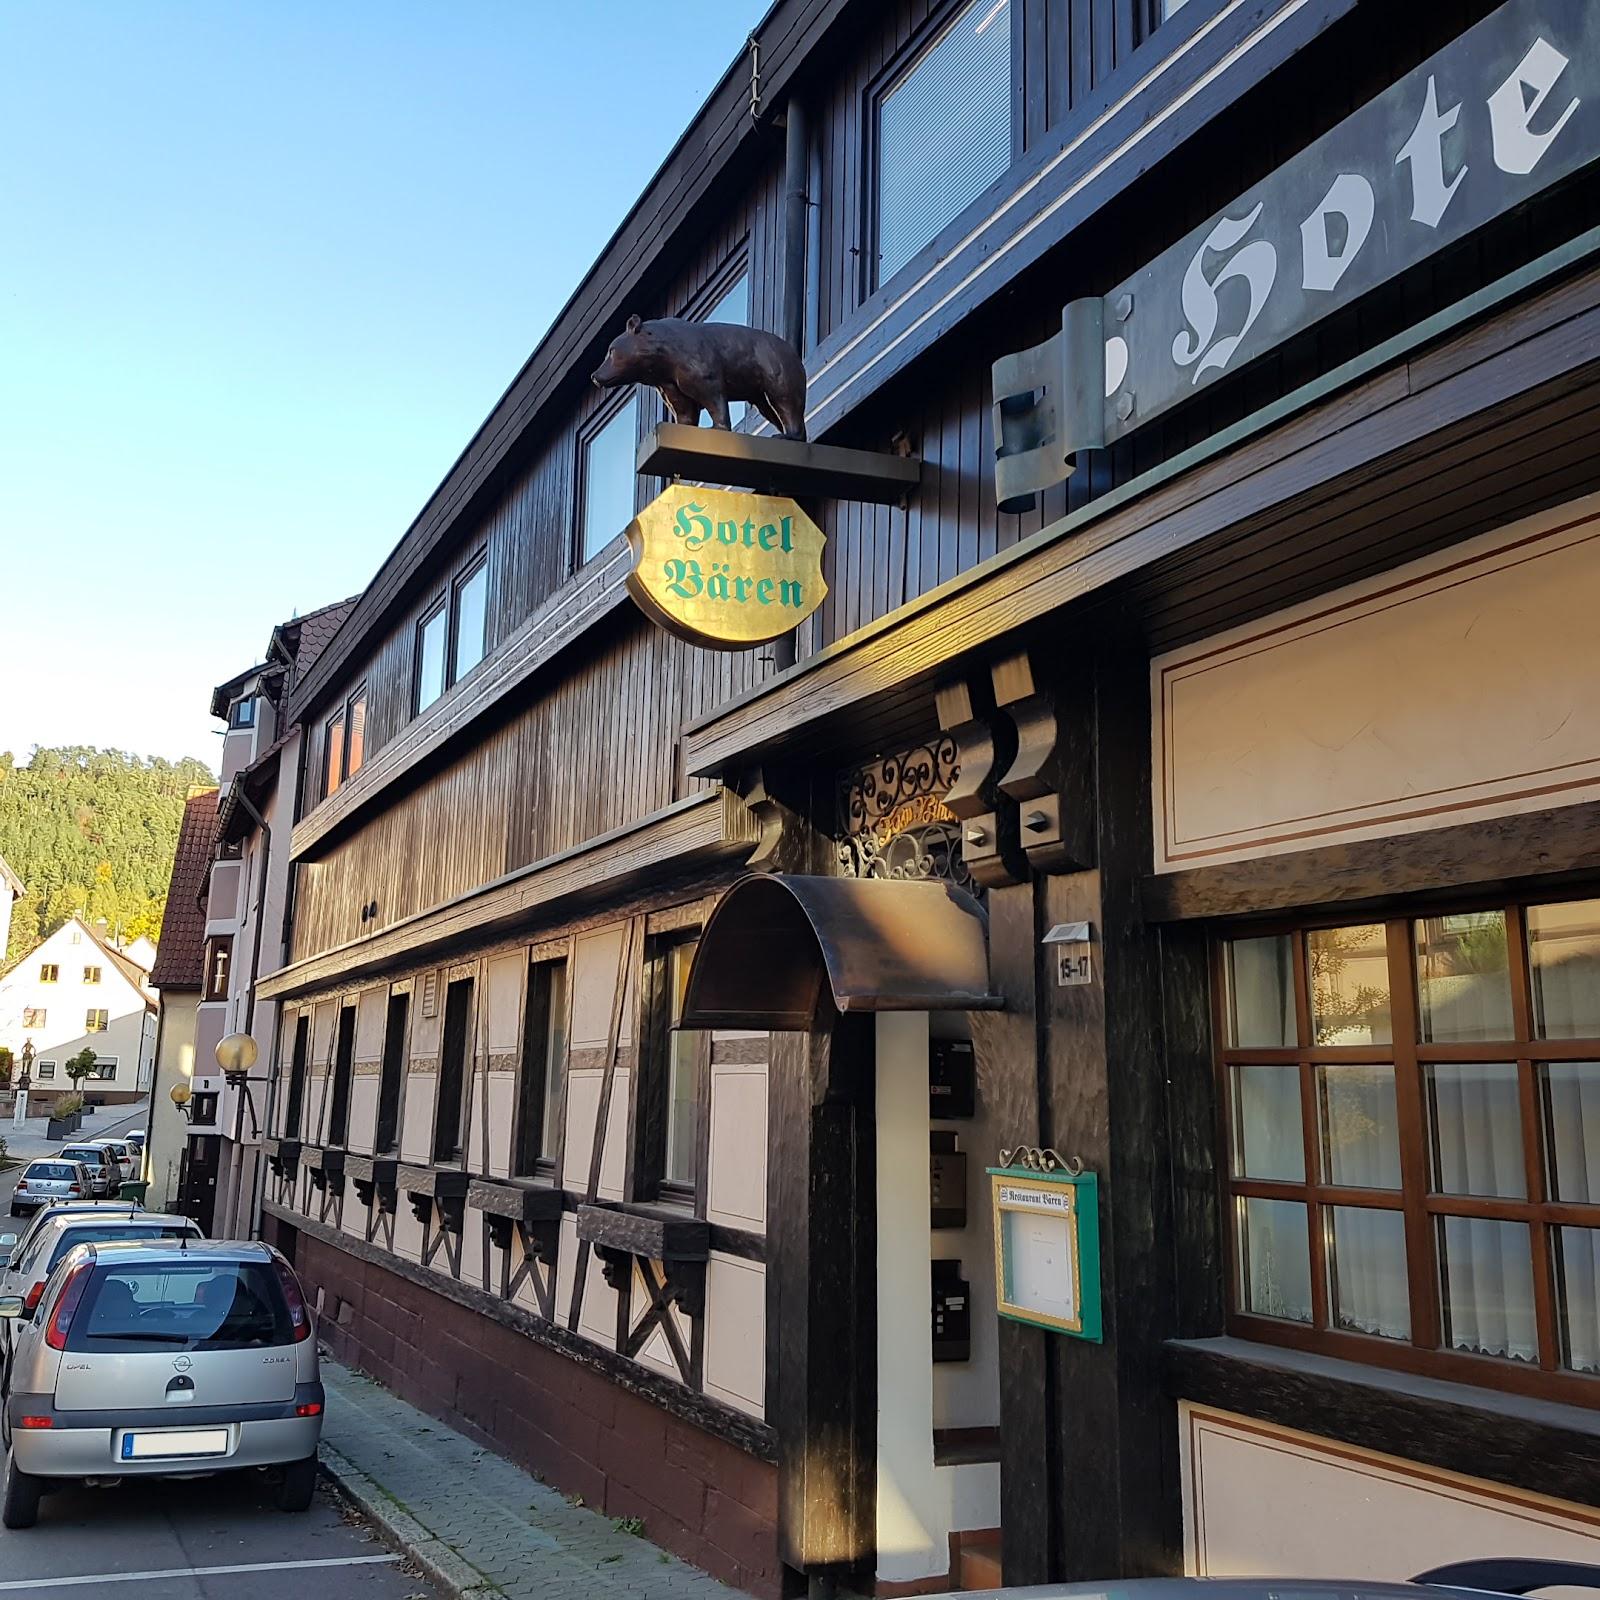 Restaurant "Hotel Bären" in Wildberg